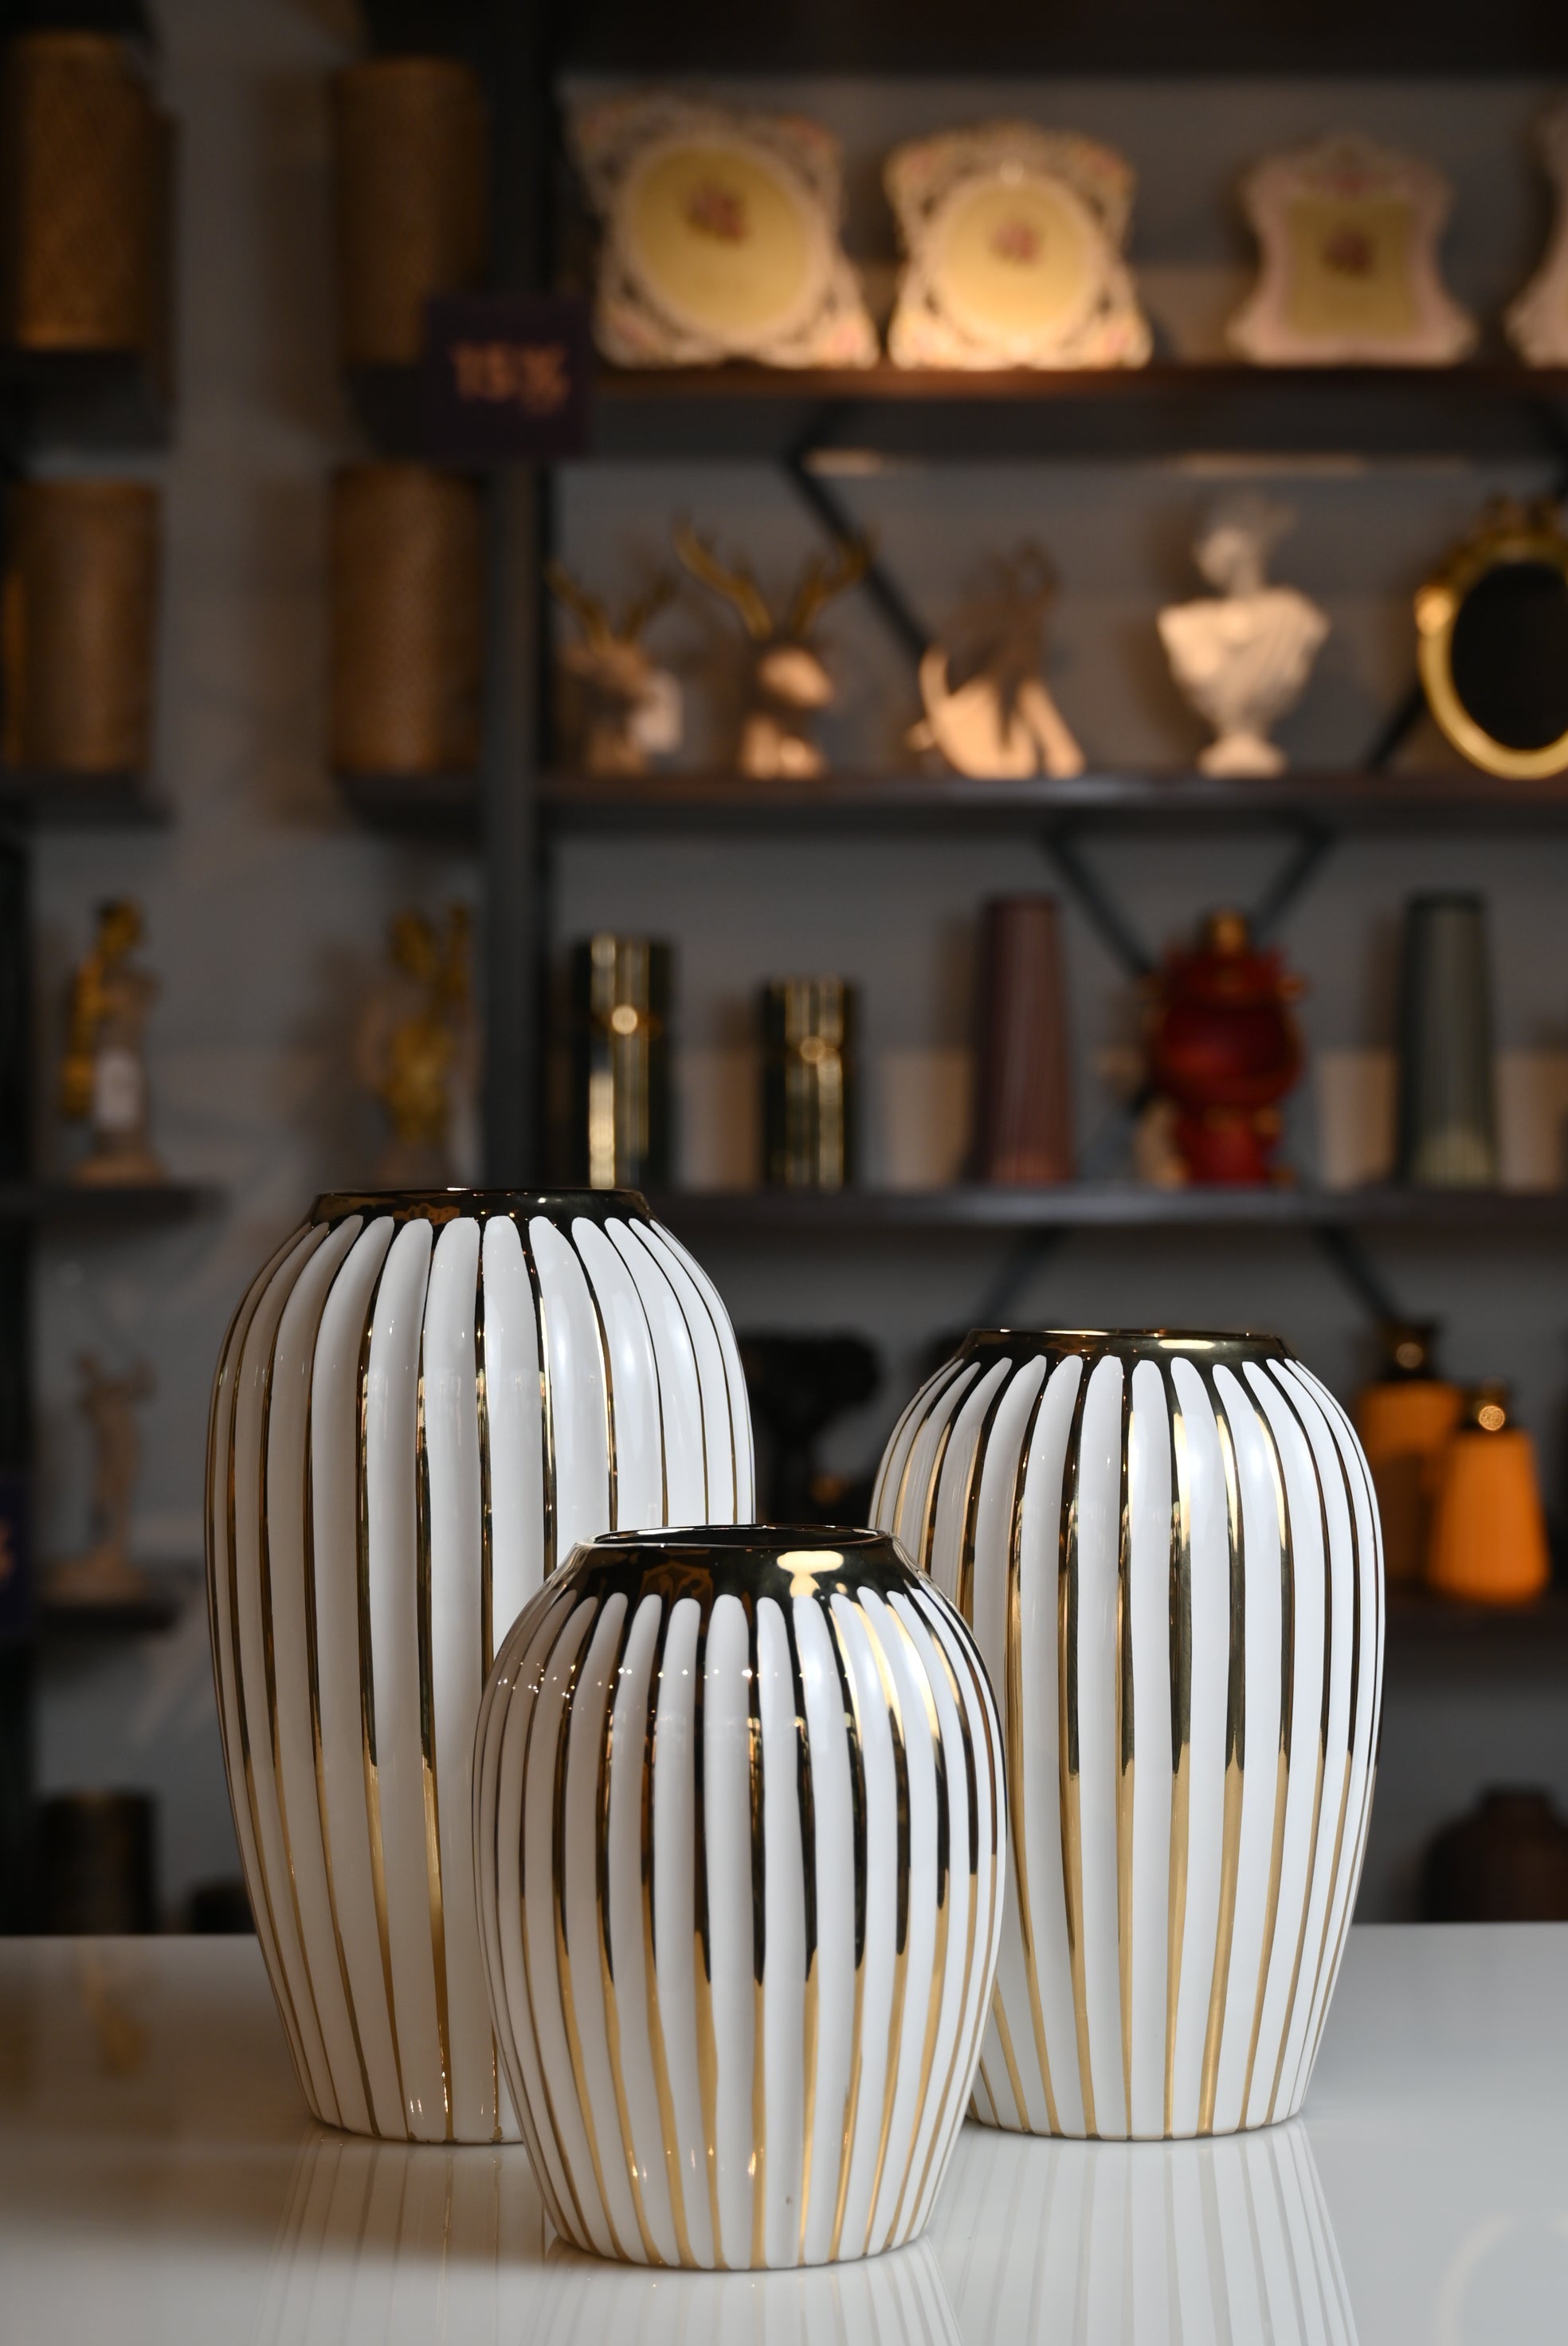 Classic White and Golden Ceramic Vase